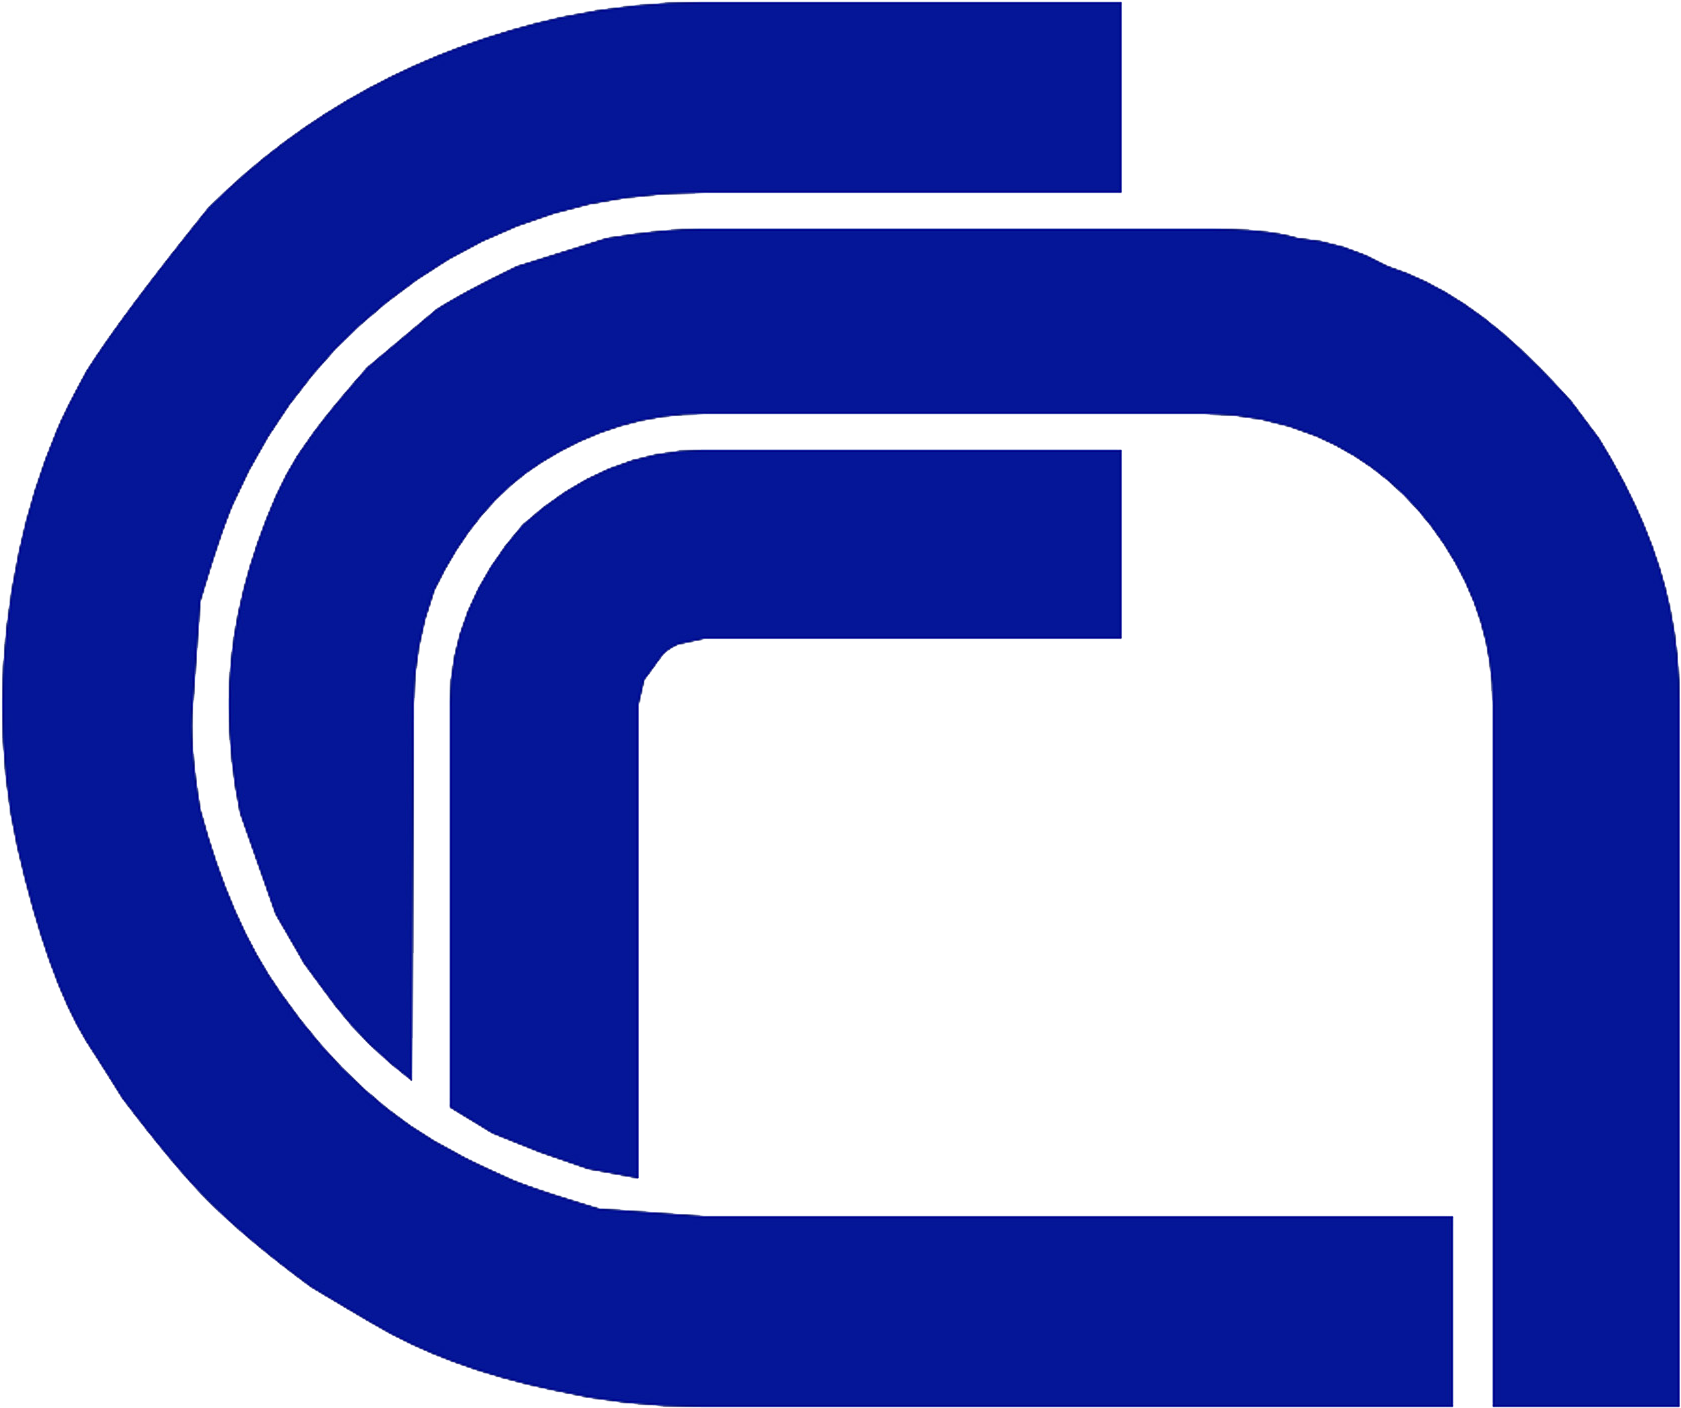 Logo Teco Brown Logo Europa Logocnrblue Trasparente - National Research Council (1732x1469)